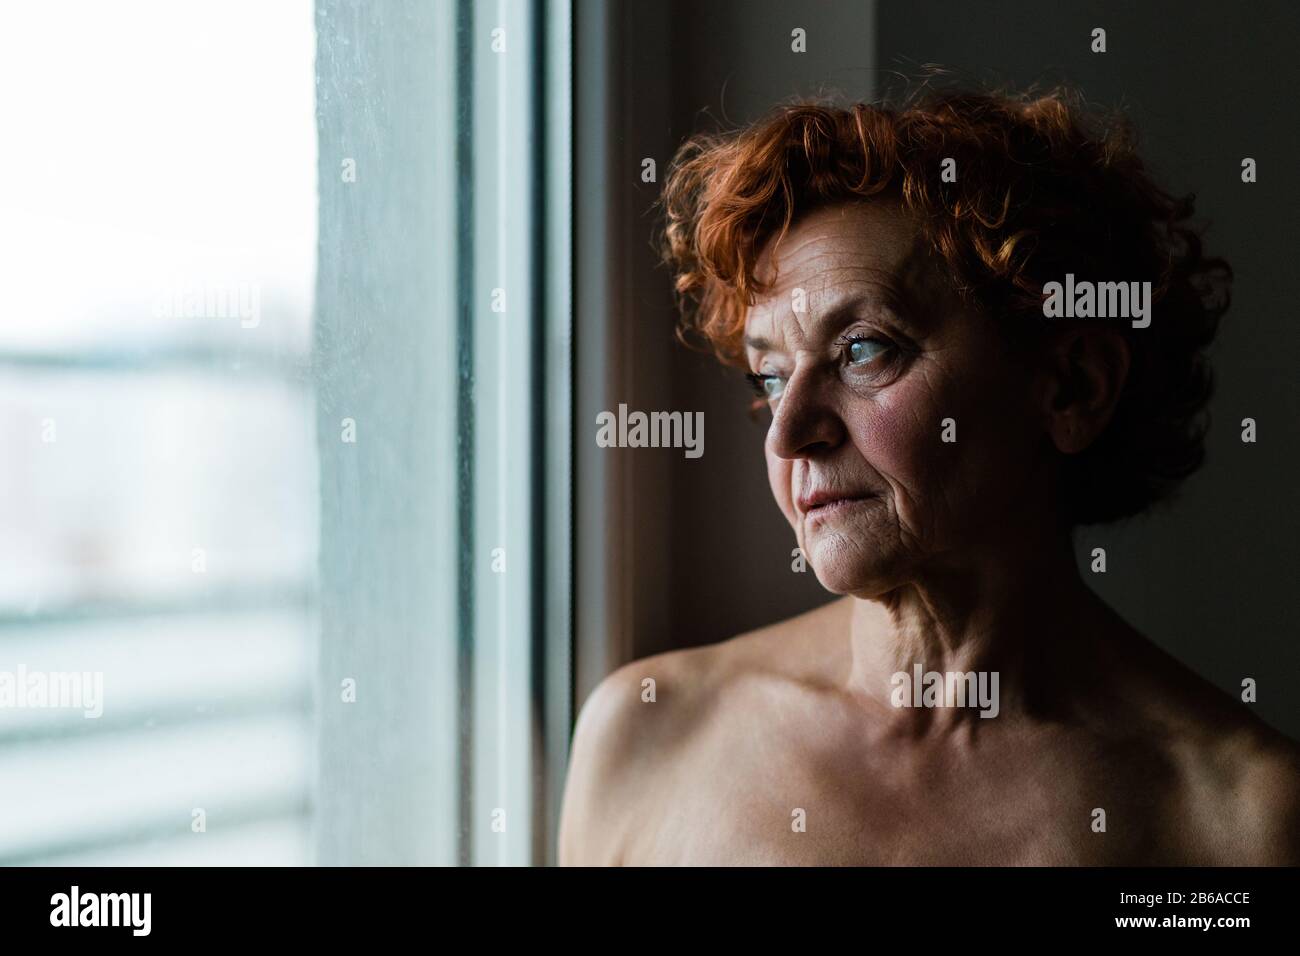 Frau am Fenster, die über das Leben nachdenkt Stockfoto